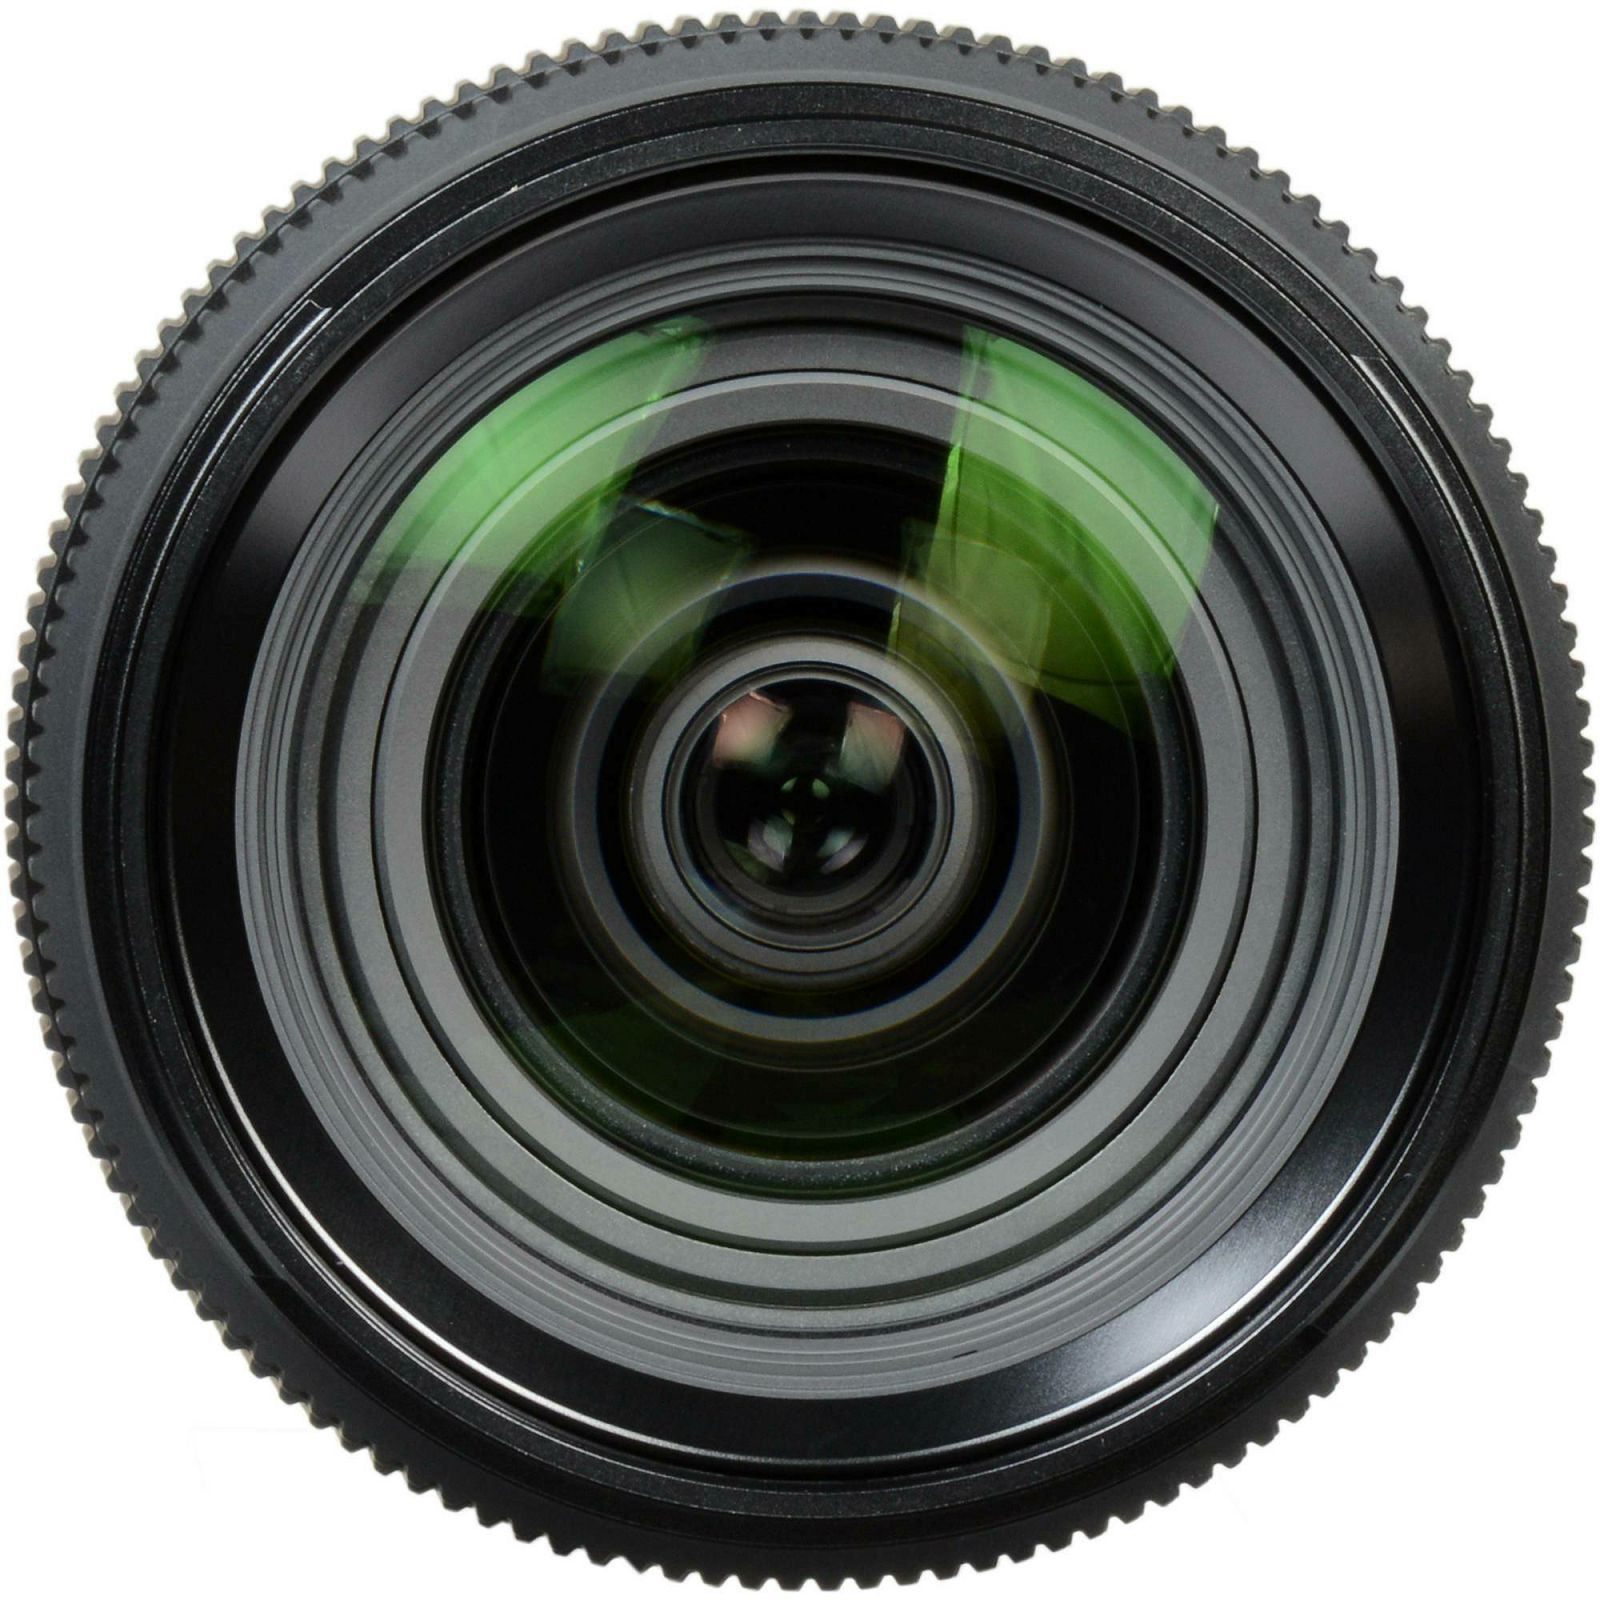 Fujifilm GF 32-64mm f/4 R LM WR (25-51mm in 35mm format) Fuji Fujinon standardni zoom objektiv za srednji format GFX 50S